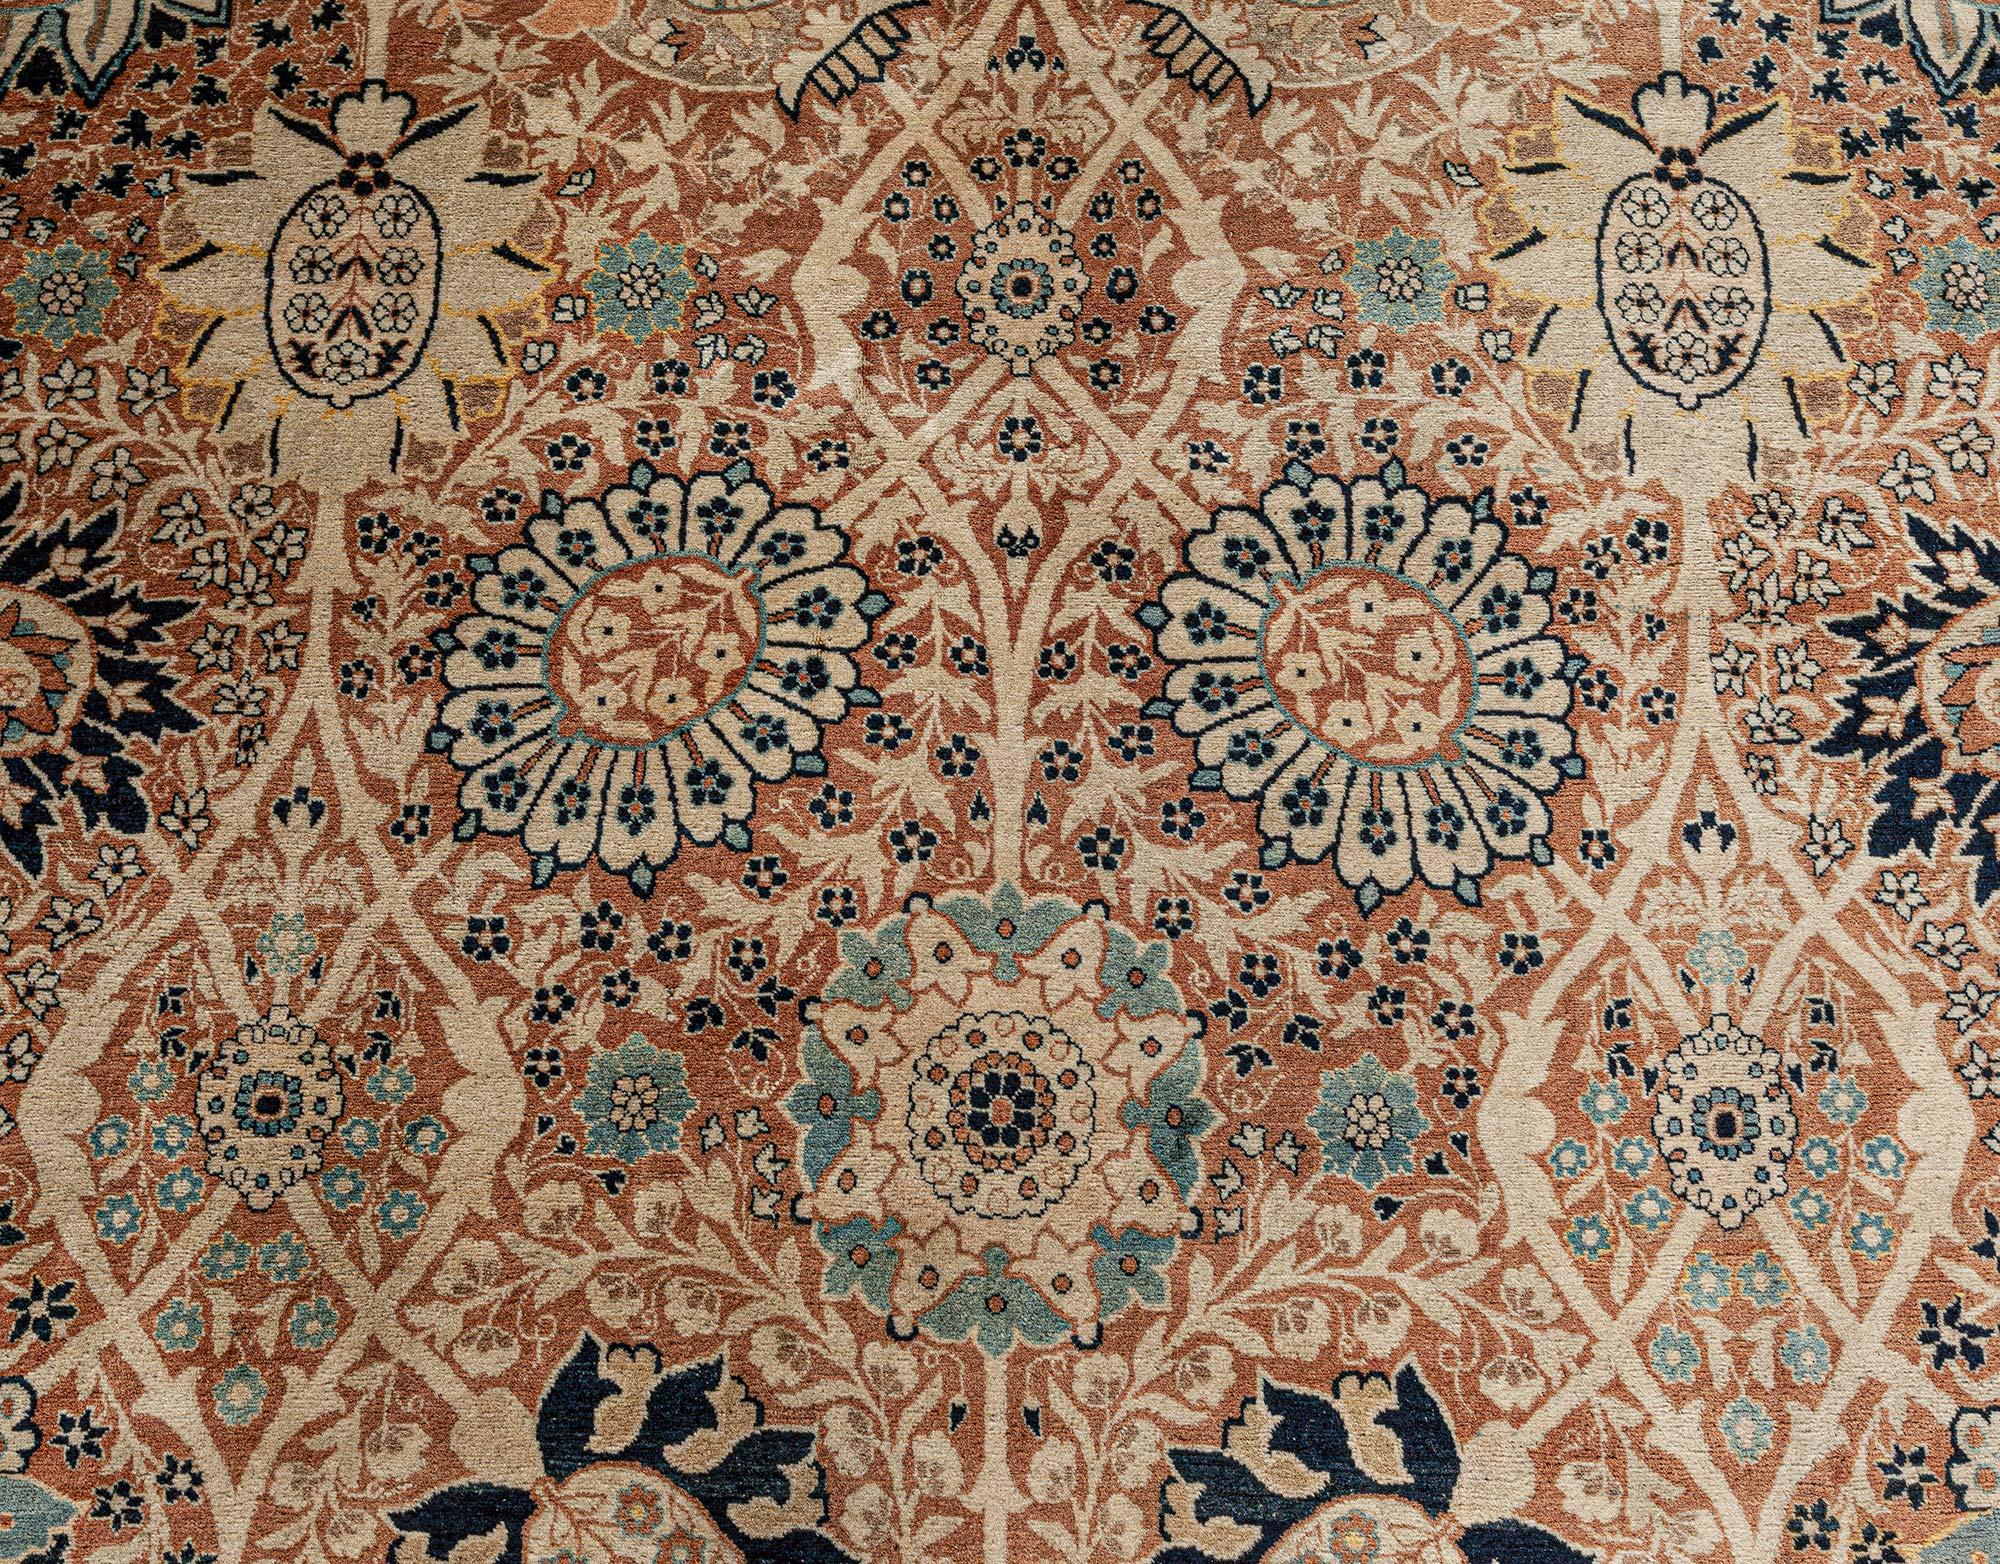 Antique Persian Haji Jalili Tabriz rug
Size: 15'0